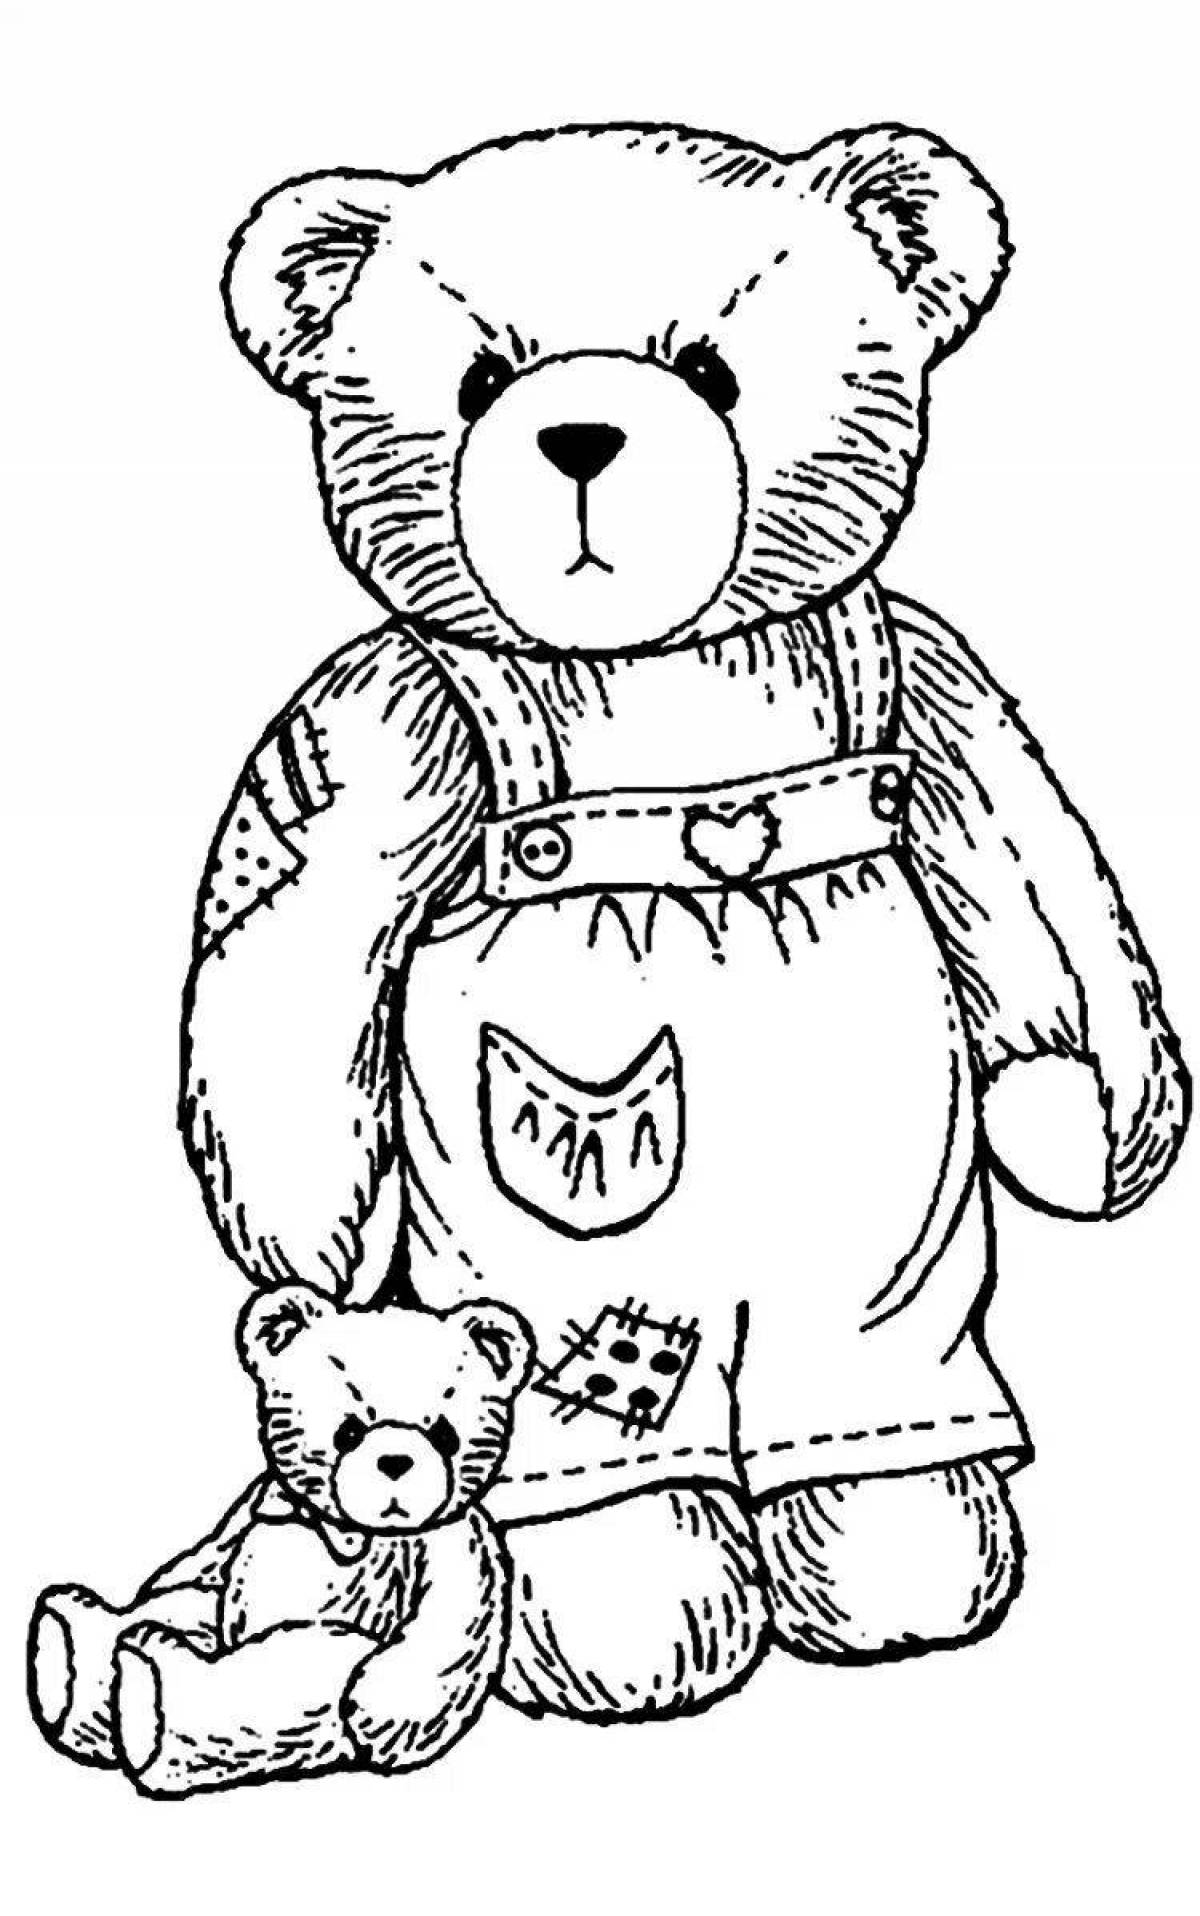 Teddy bear shiny panties